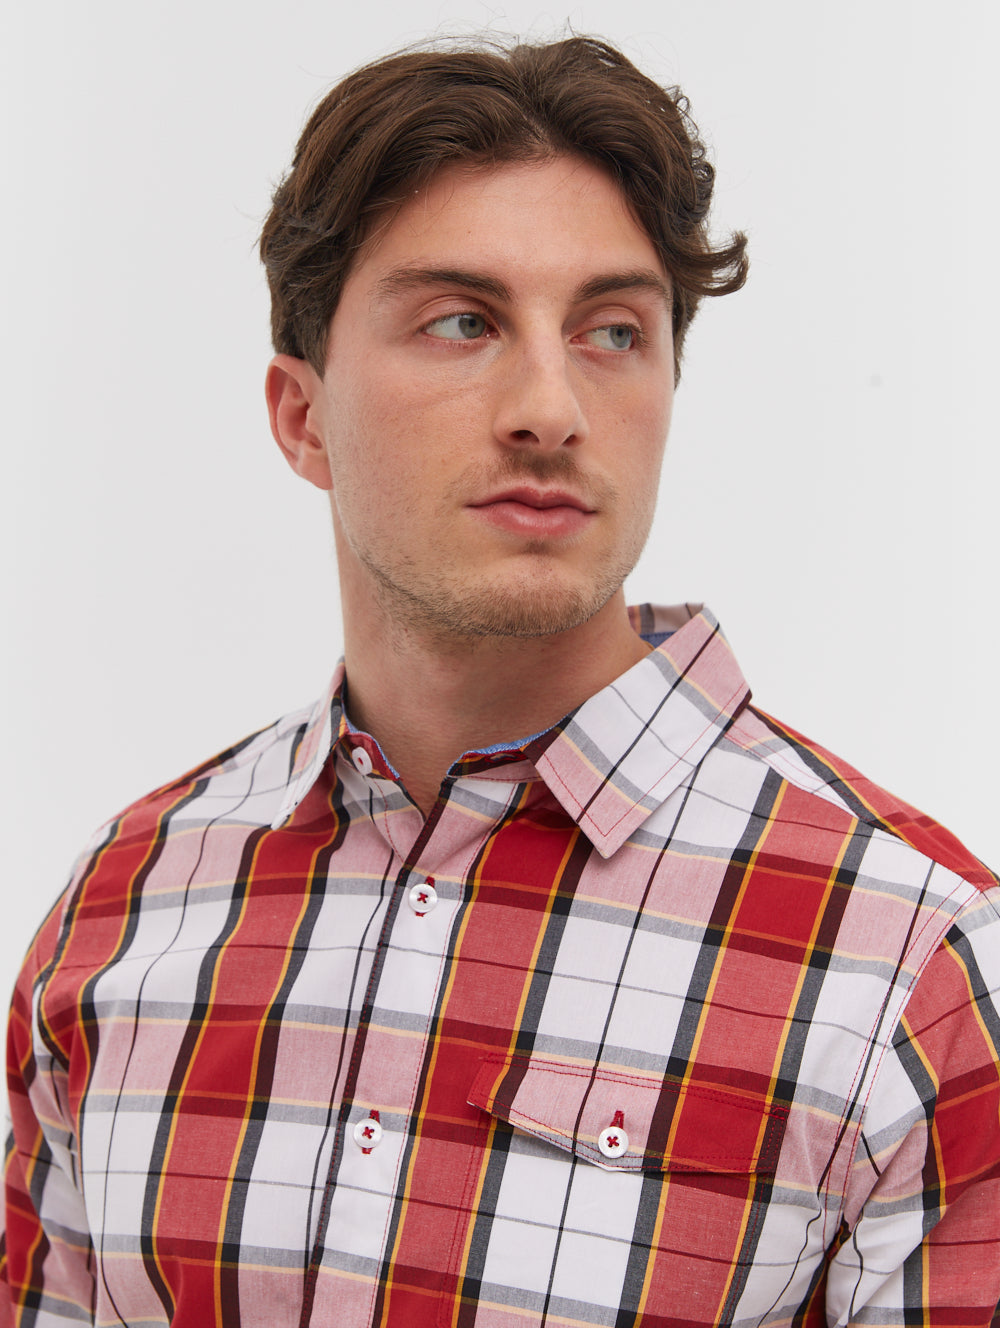 Marcin Long Sleeve Check Shirt - BN2G128602